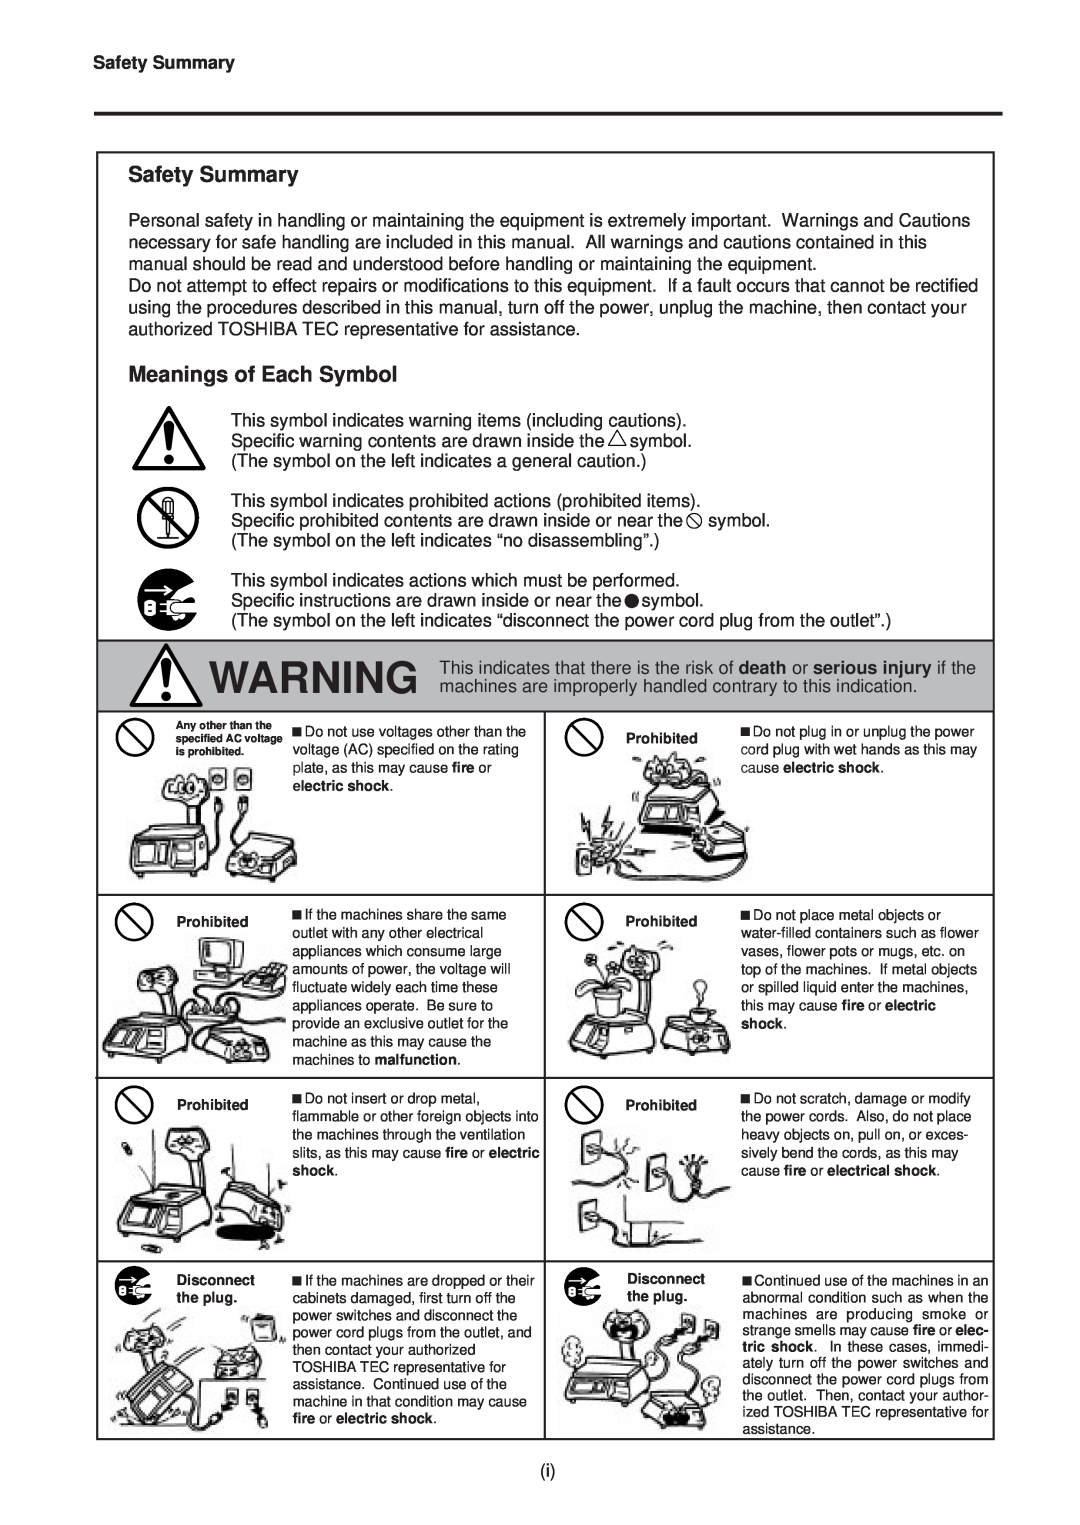 Toshiba SL-9000N-FFB, SL-9000-FFB, EM1-31064JE owner manual Safety Summary, Meanings of Each Symbol 